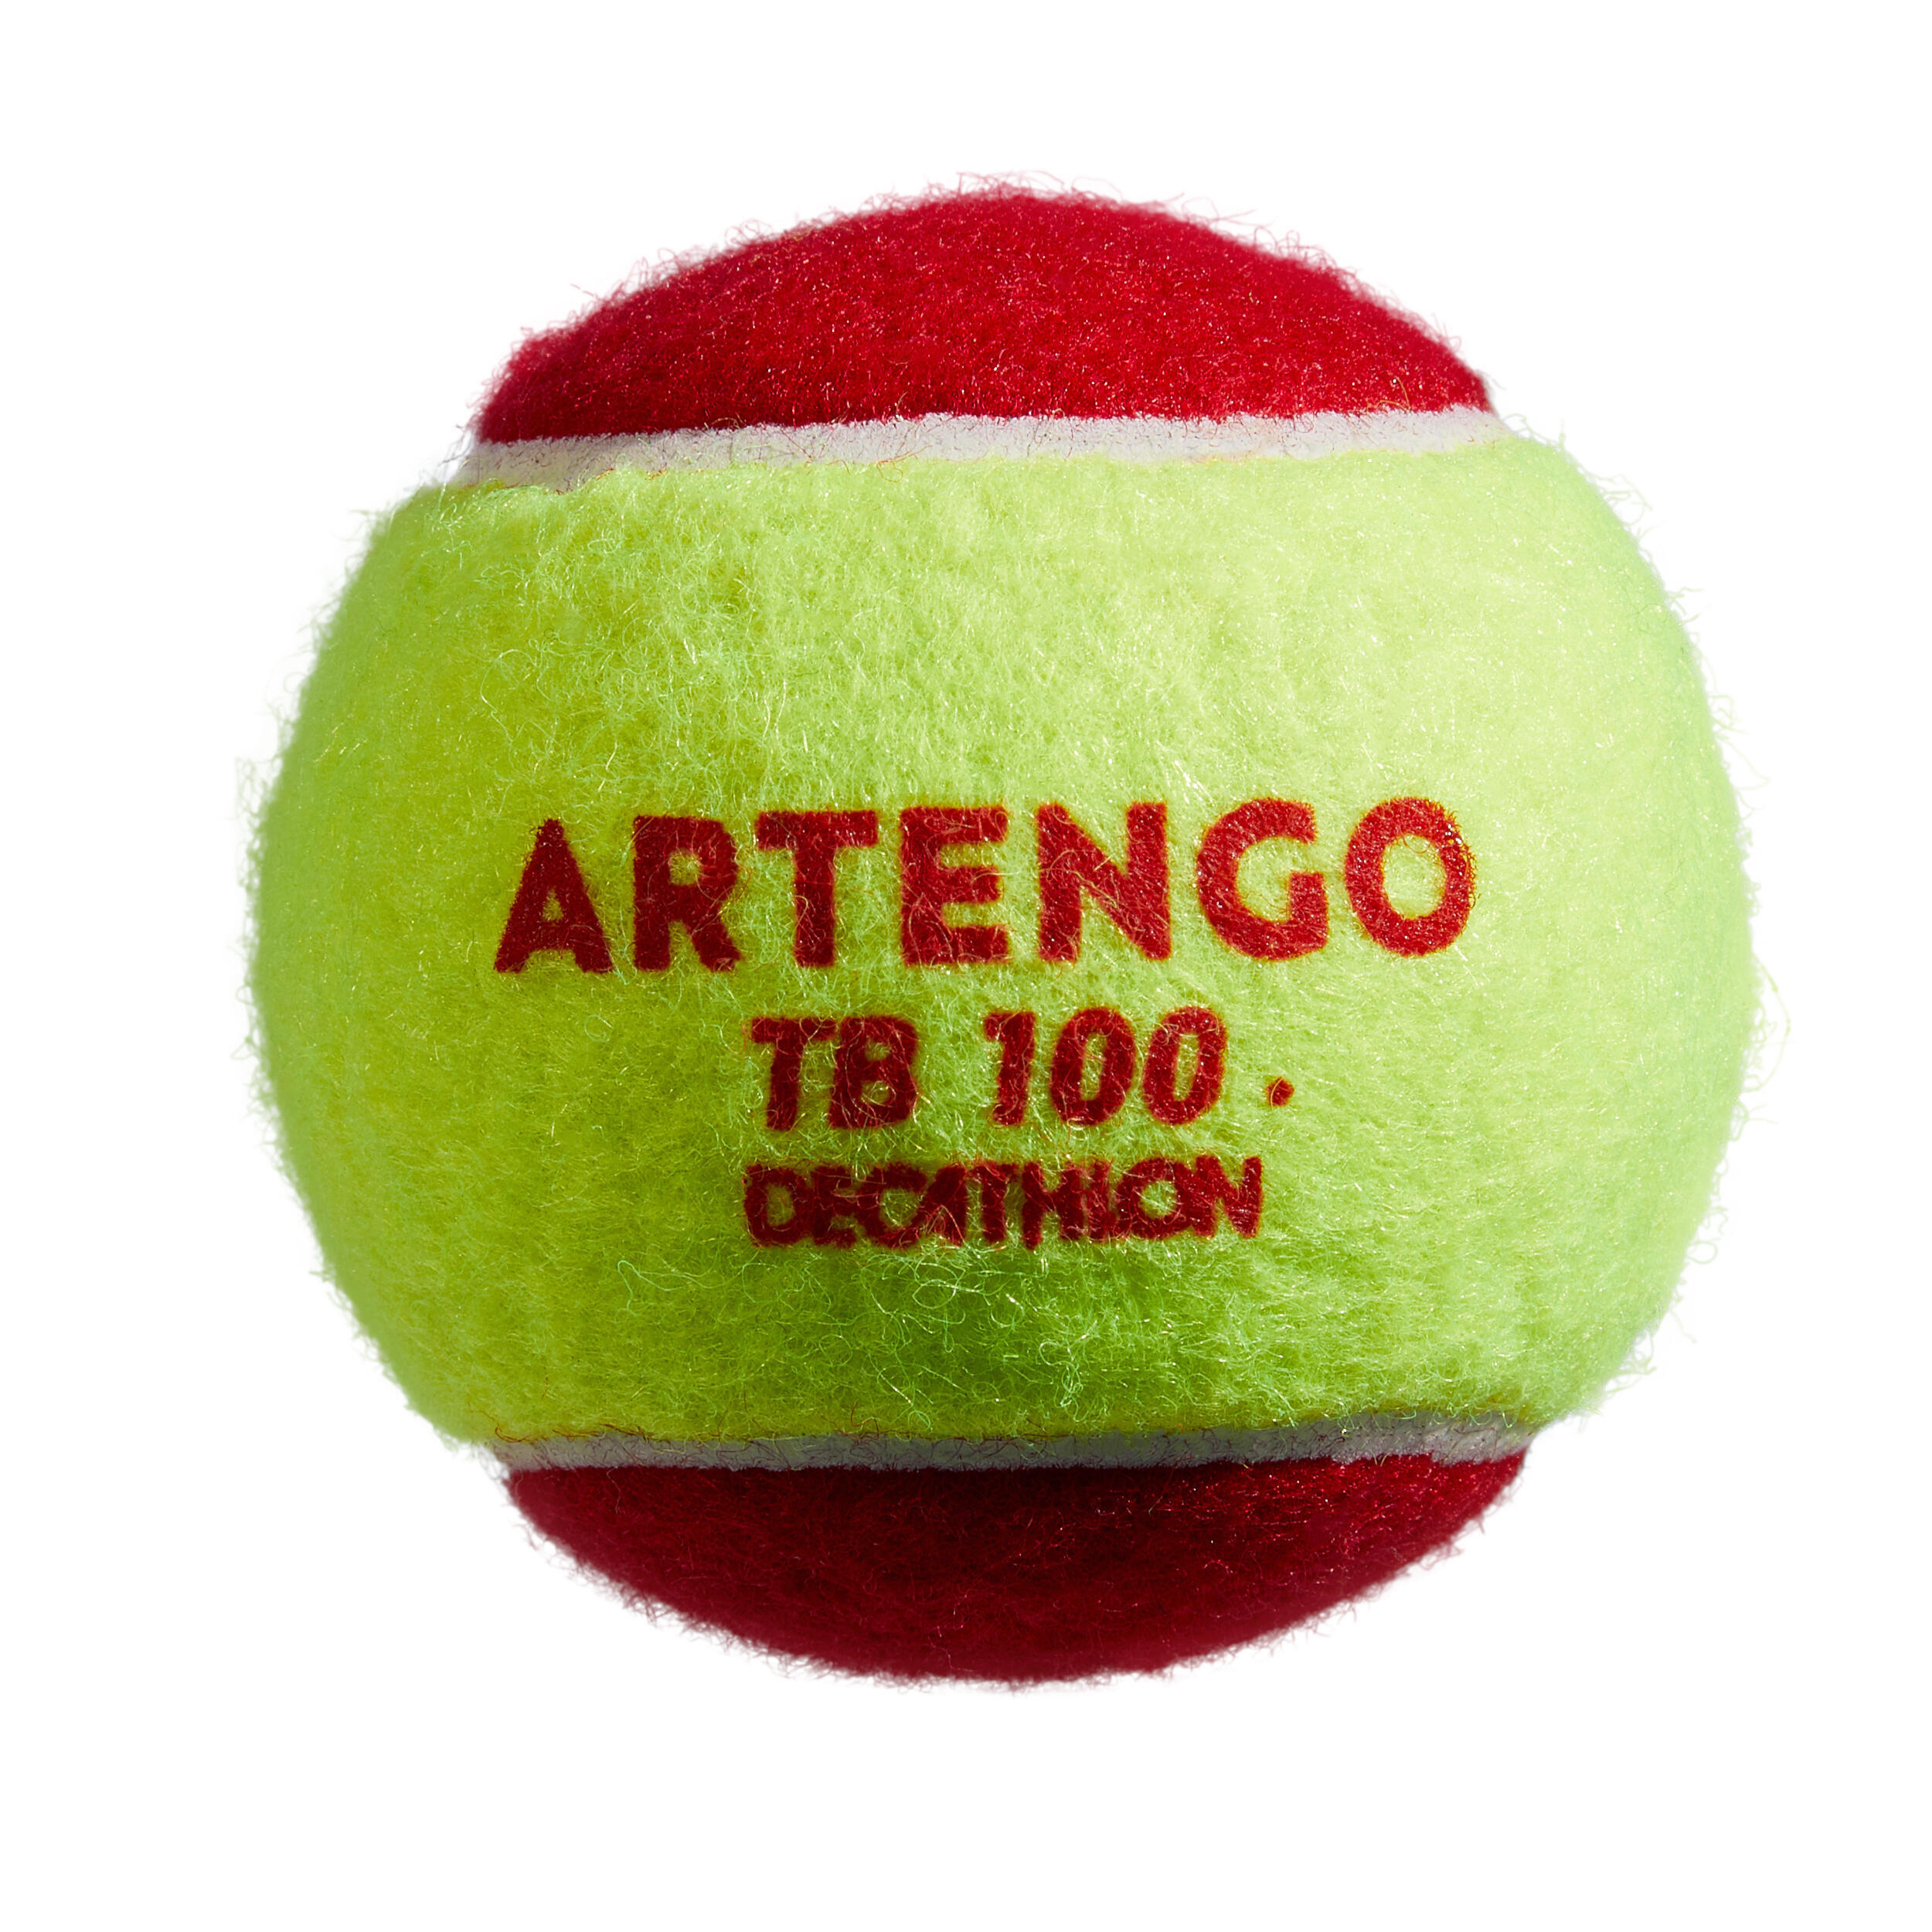 Tennis Ball TB100*3 - Red 5/5